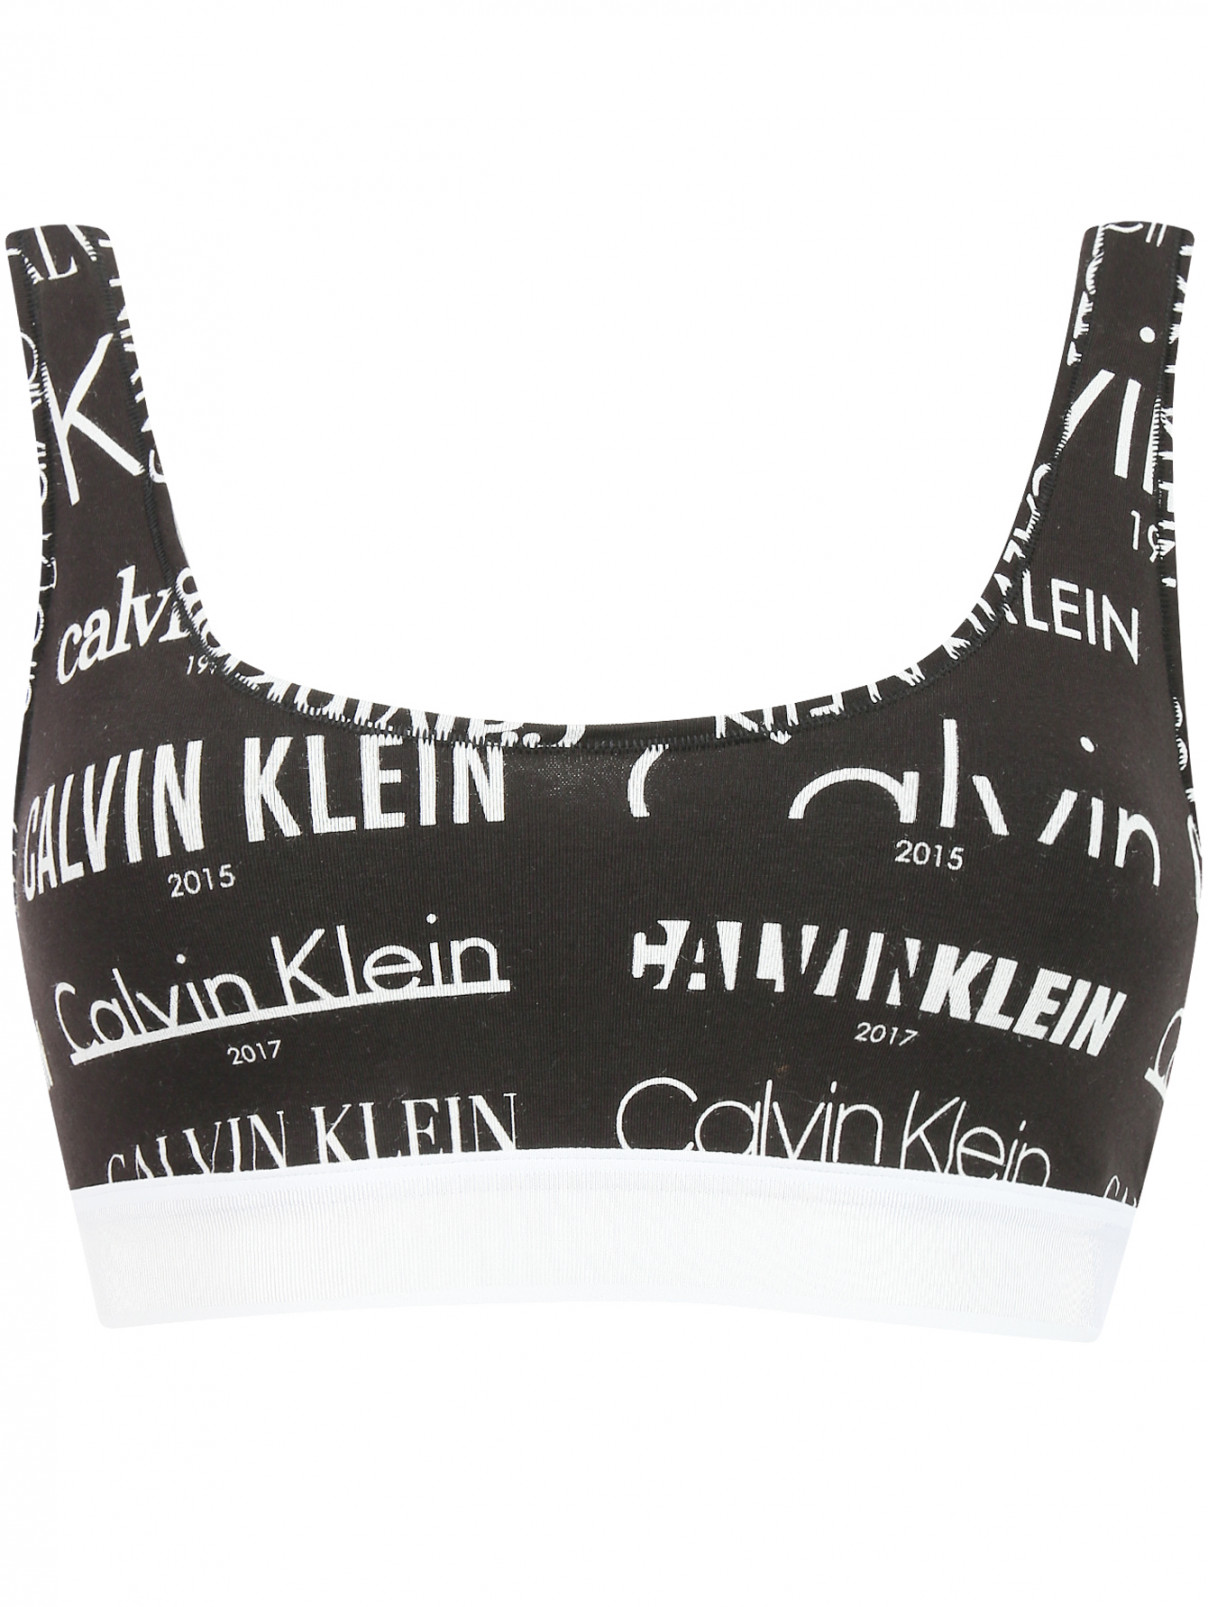 Кроп-топ с узором и контрастной отделкой Calvin Klein  –  Общий вид  – Цвет:  Черный